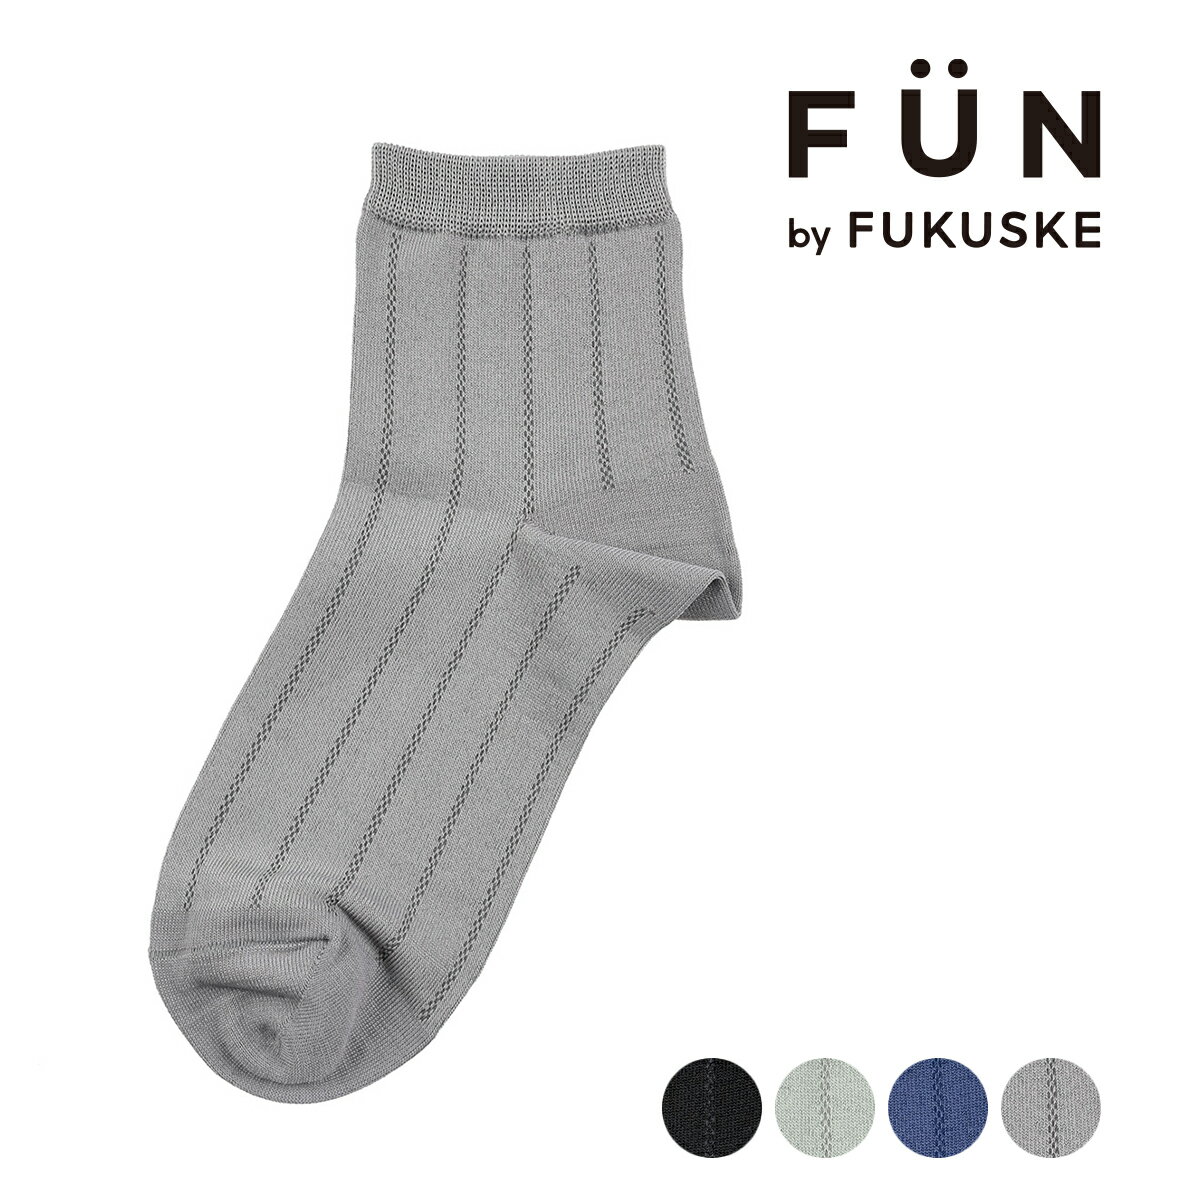 fukuske FUN(フクスケファン) ： キレイ見え mint feel リブ ソックス ショート丈 つま先かかと補強(3162-44M) 婦人 女性 レディース 靴下 フクスケ fukuske 福助 公式